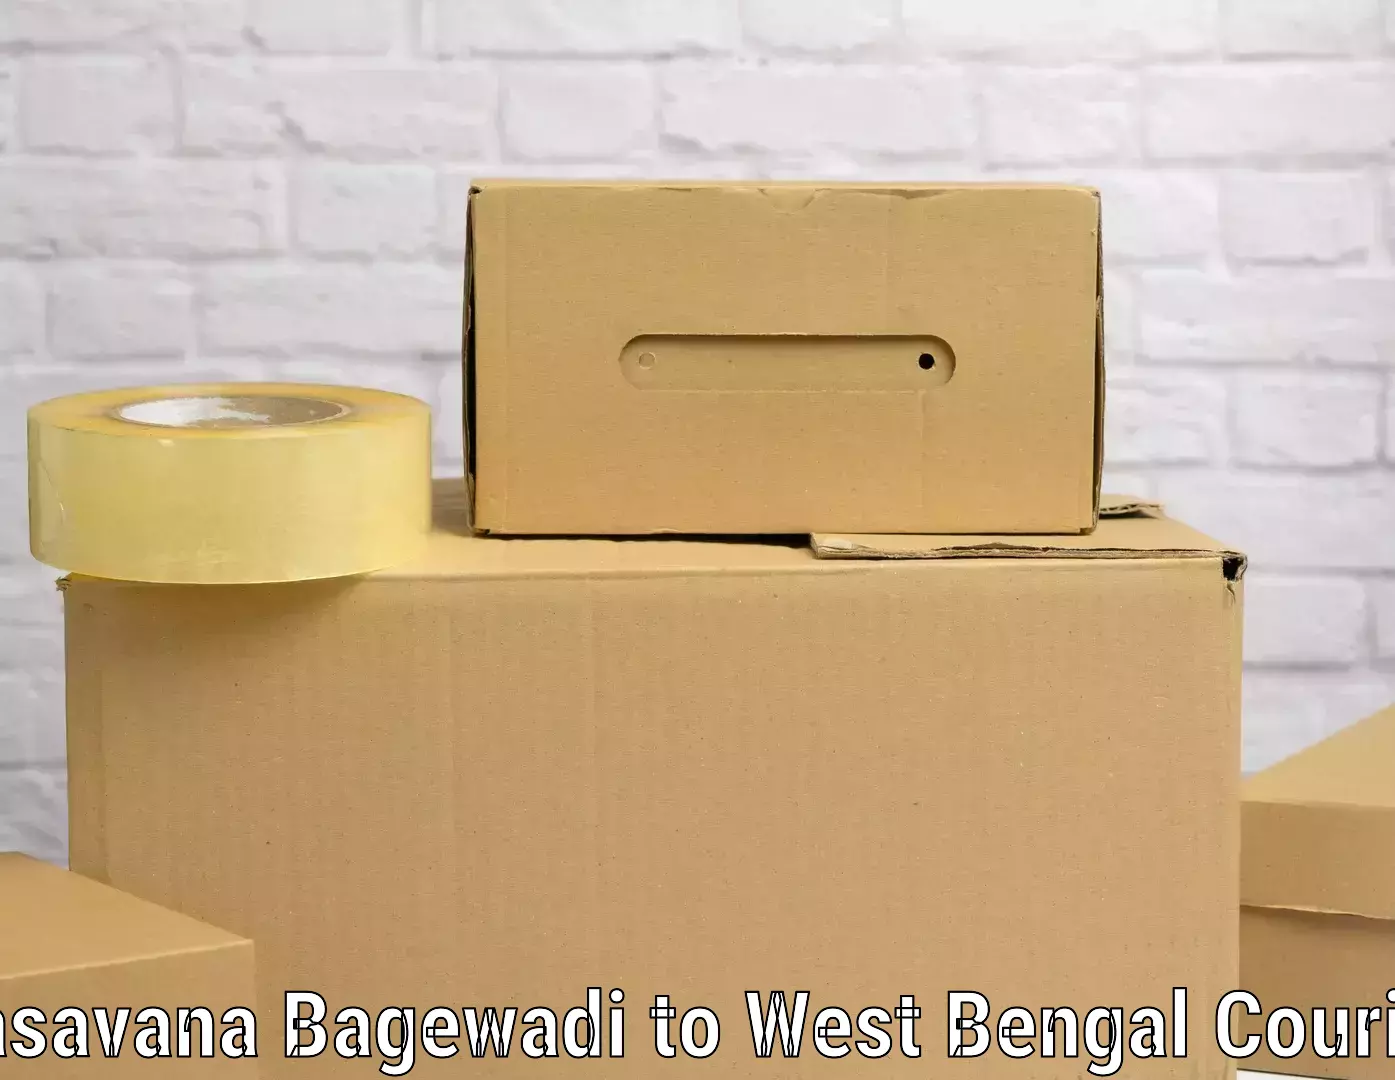 Luggage shipment tracking Basavana Bagewadi to West Bengal